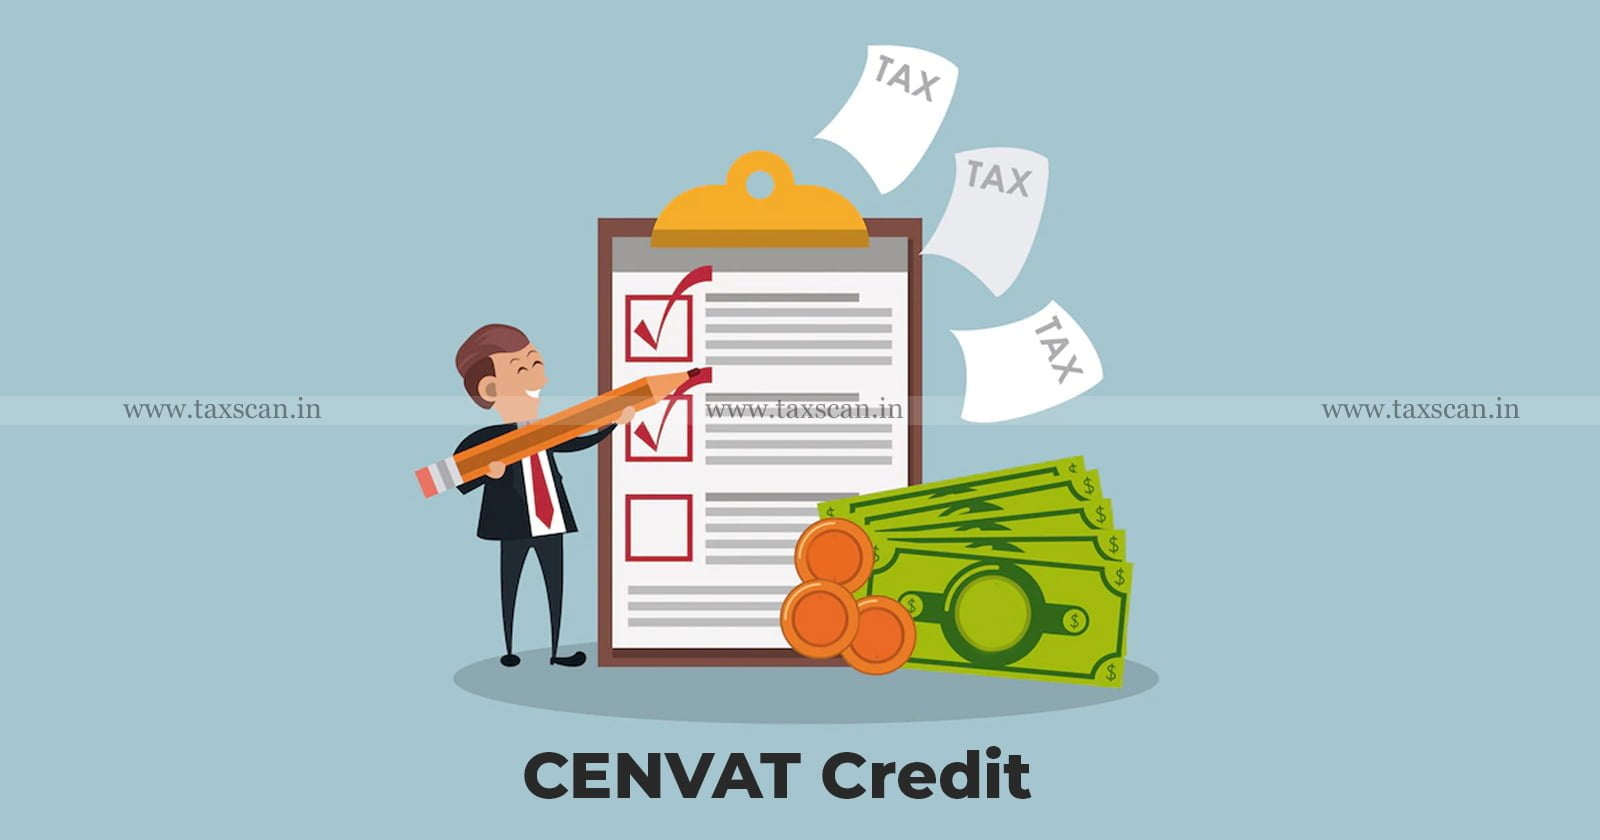 CESTAT - CESTAT Ahmedabad - Cenvat Credit - Cenvat Credit excess - TAXSCAN